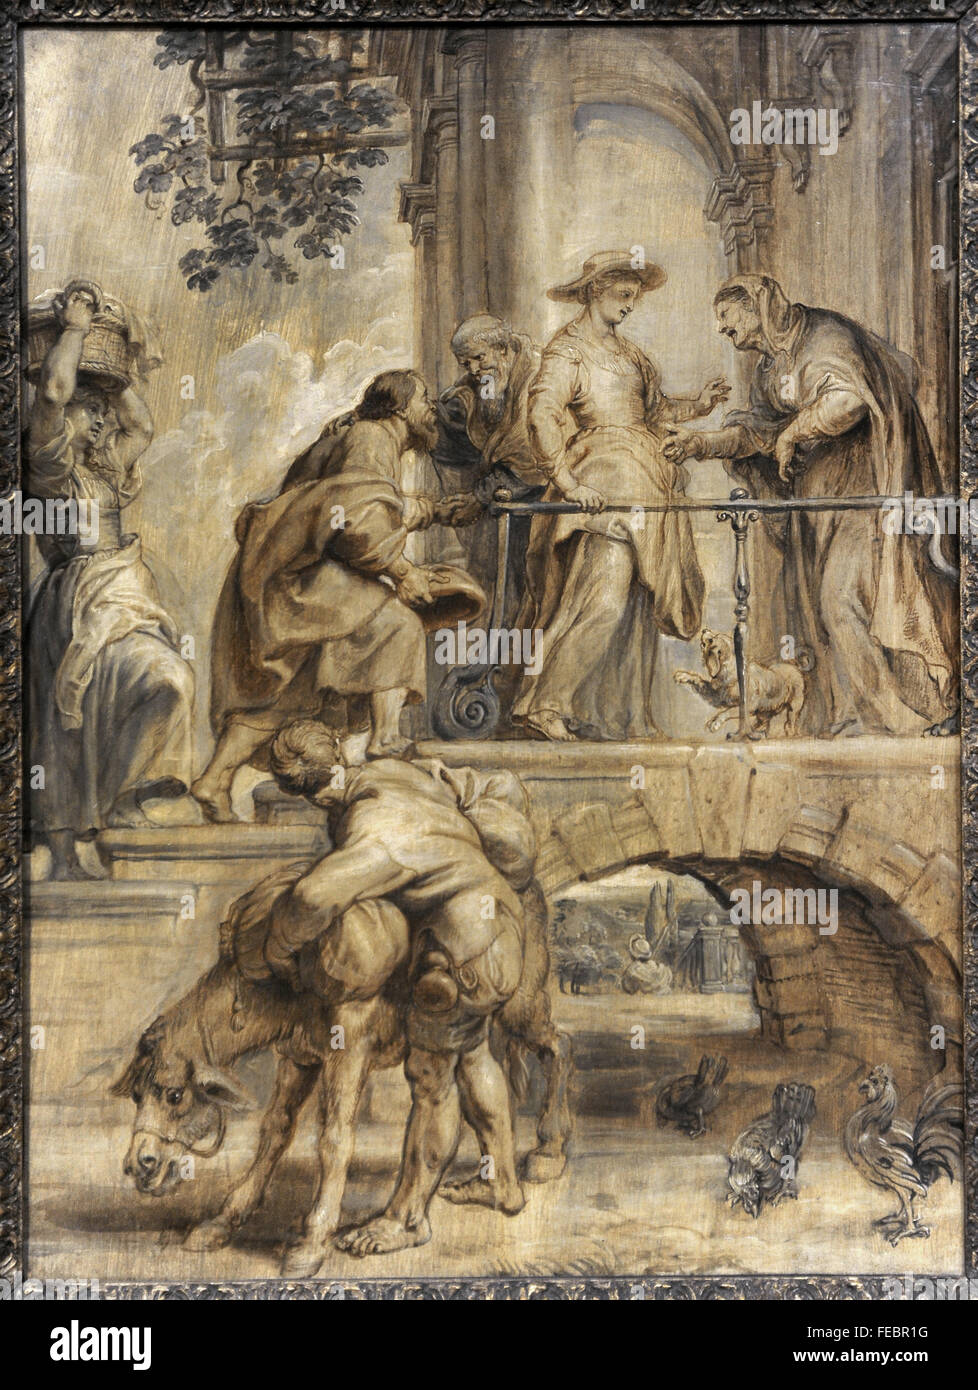 Peter Paul Rubens (1577-1640). Peintre flamand. Visitation de la Vierge Marie, 1632-1634. Galerie nationale. Prague. République tchèque. Banque D'Images